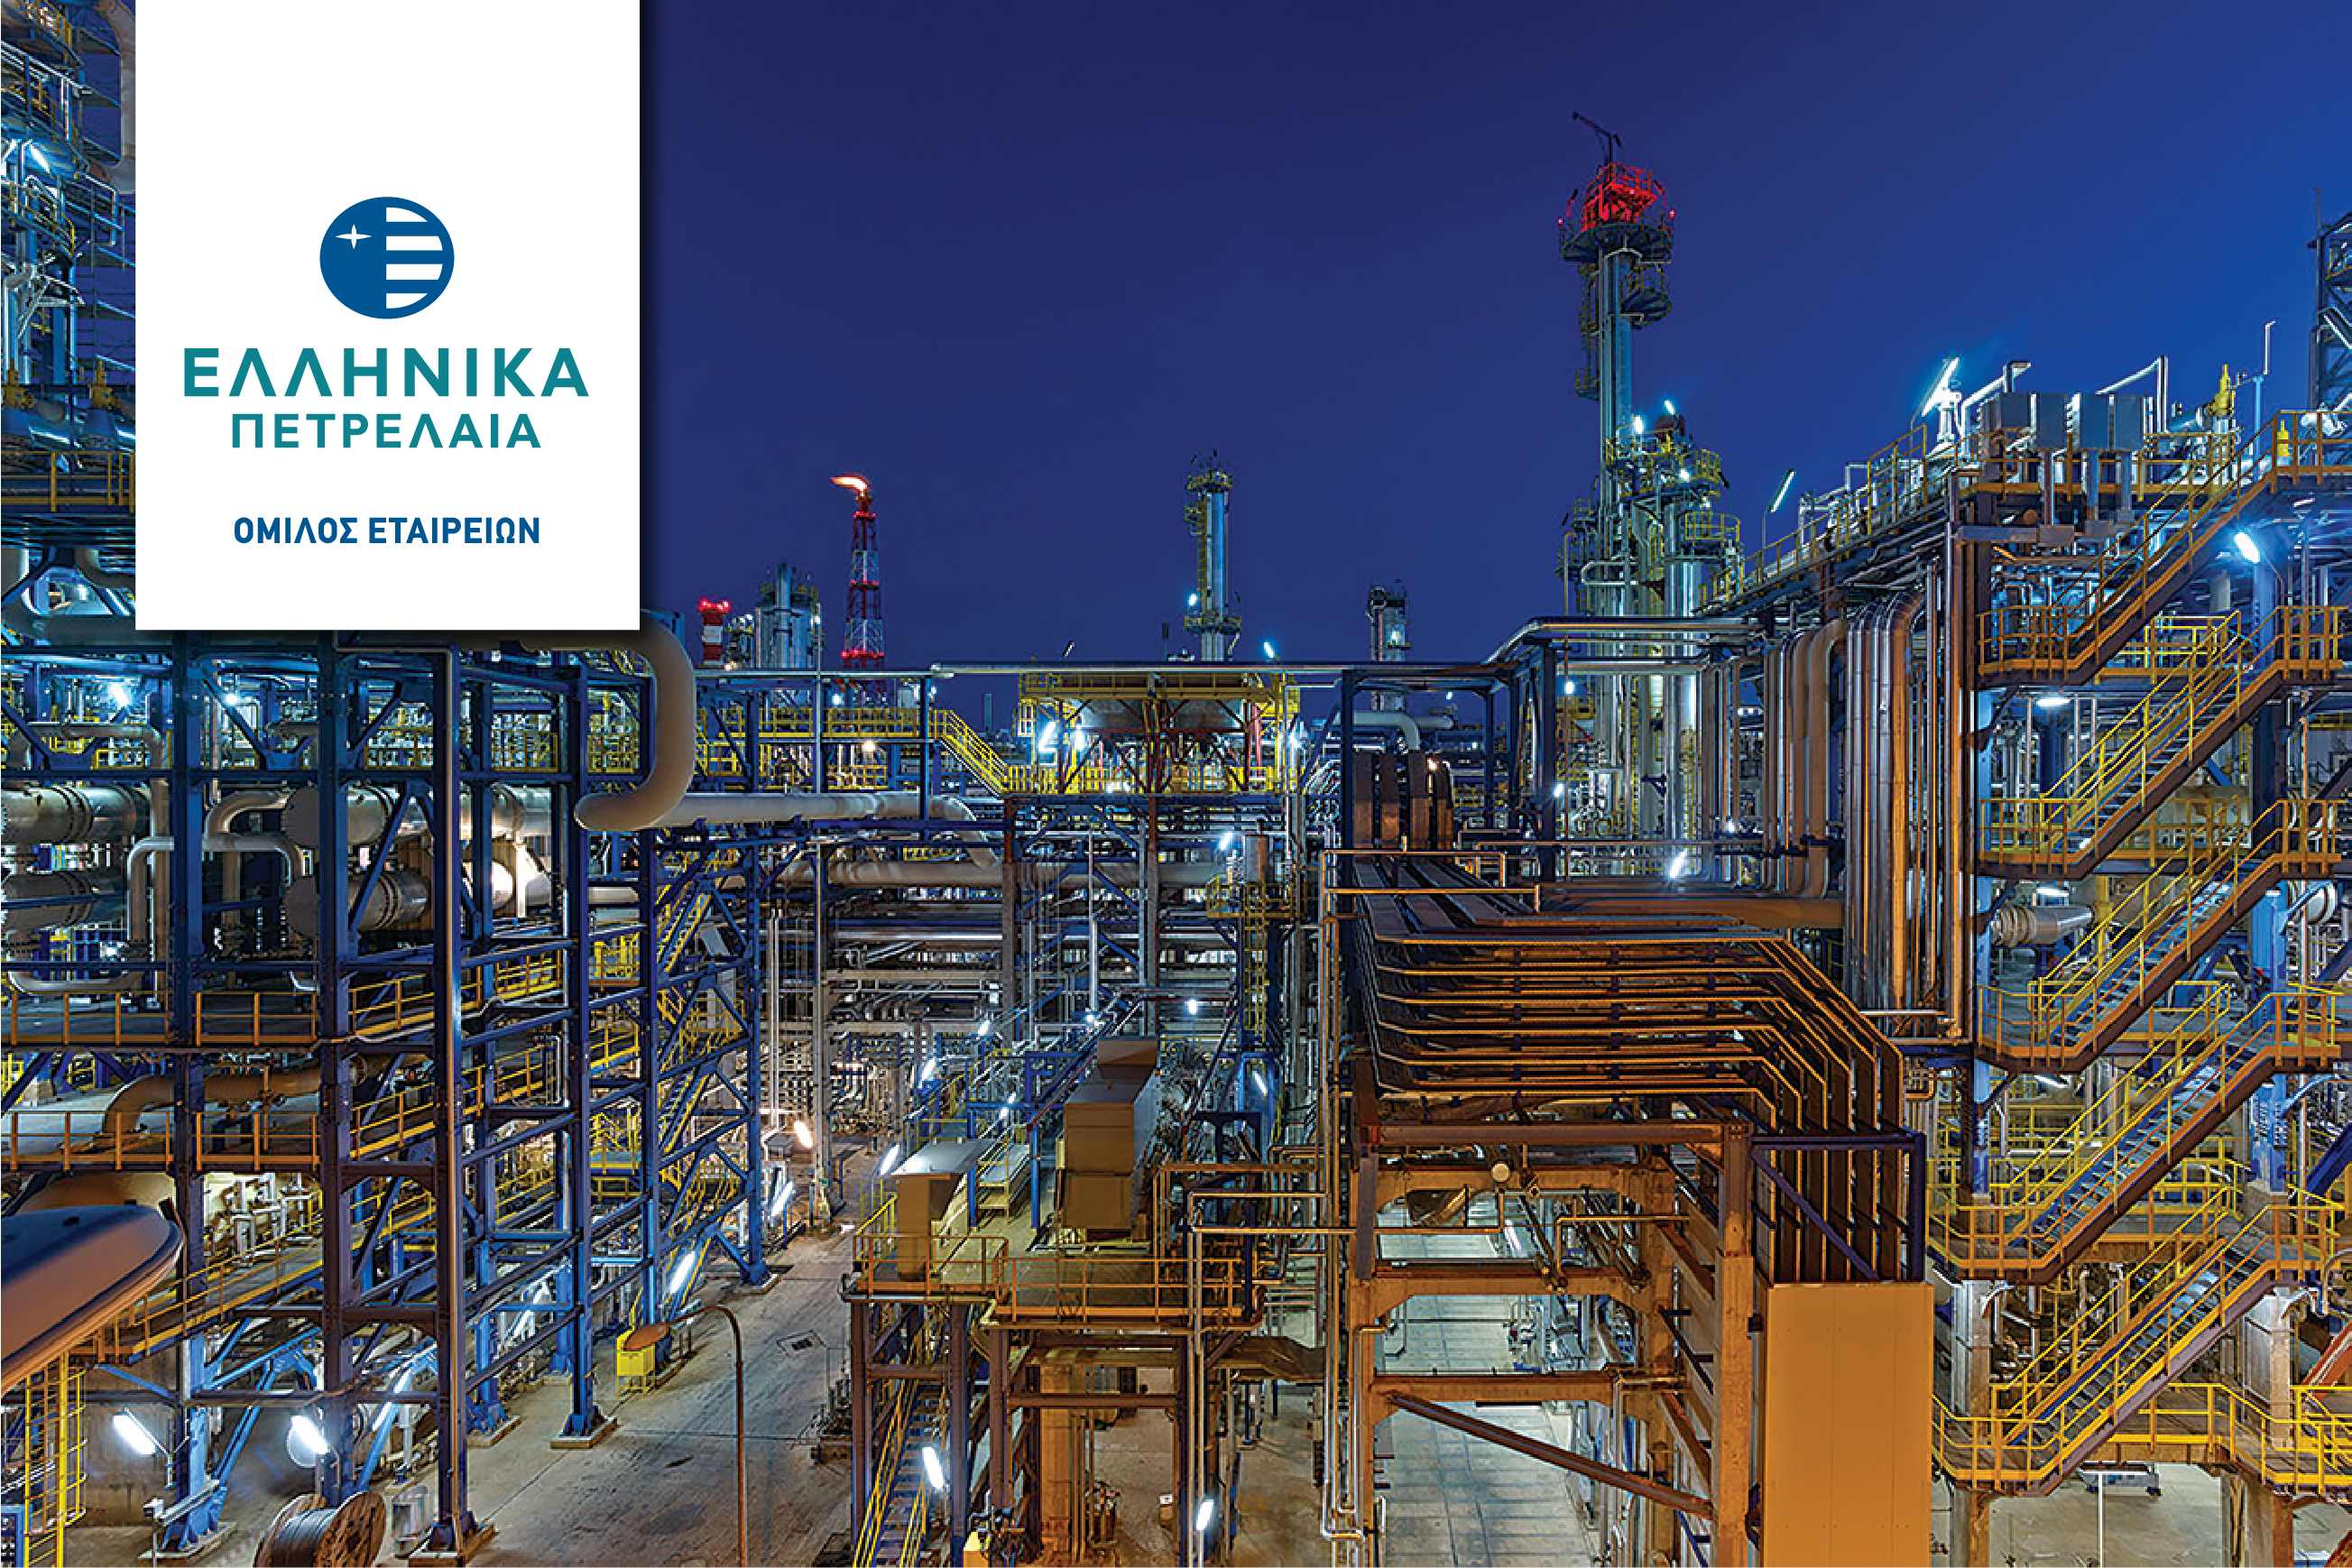 Ελληνικά πετρέλαια: Εξαγόρασε αιολικά πάρκα 55,2 MW στην Ανατολική Μάνη Λακωνίας – Στα 90 εκατ. ευρώ το τίμημα